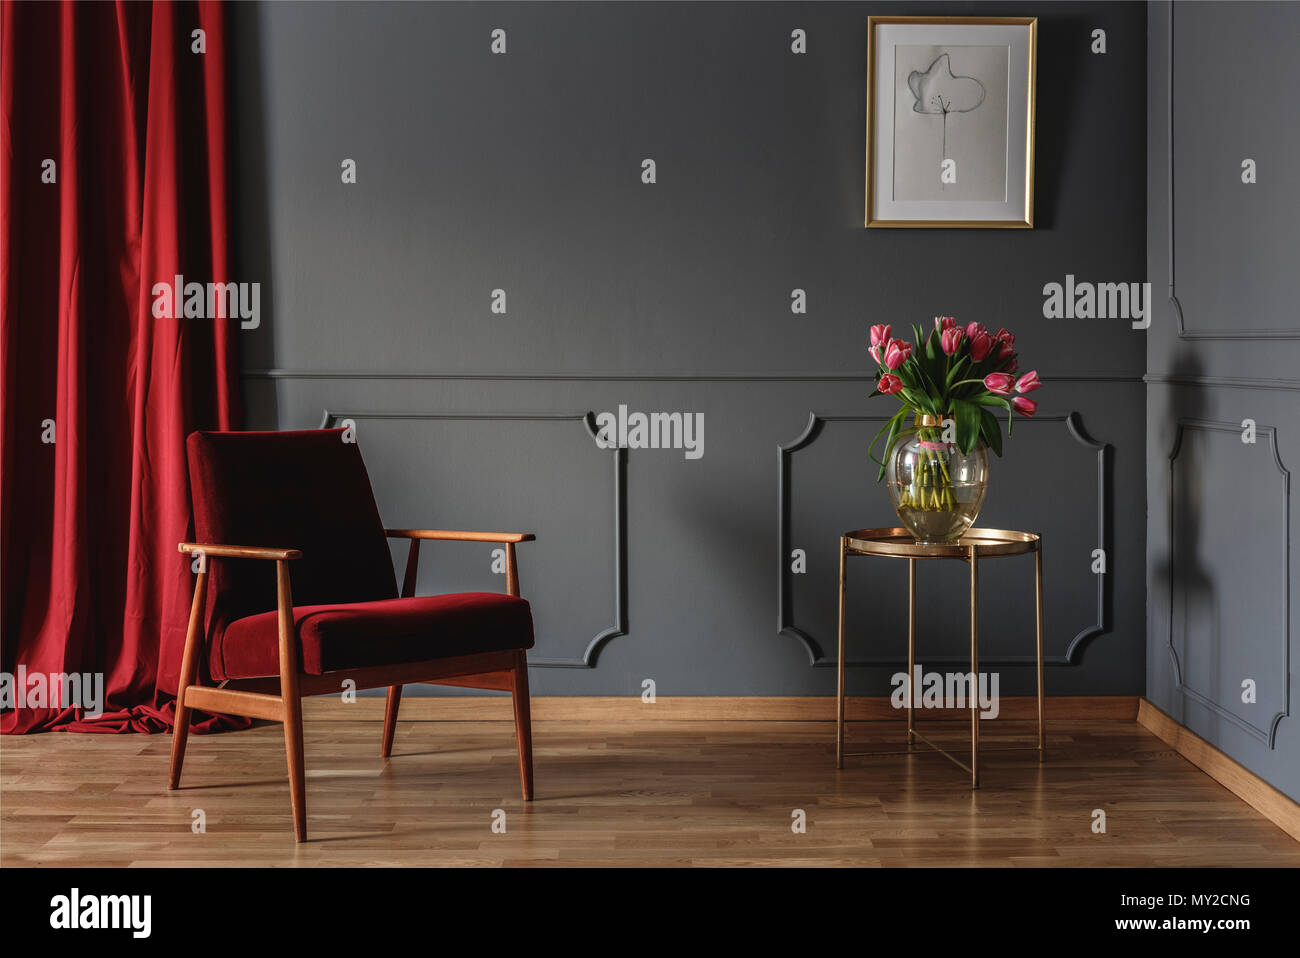 Salle d'attente simple intérieur avec un seul fauteuil rouge debout contre un mur gris foncé au moulage à côté d'une table d'or avec des fleurs roses. Du vrai ph Banque D'Images